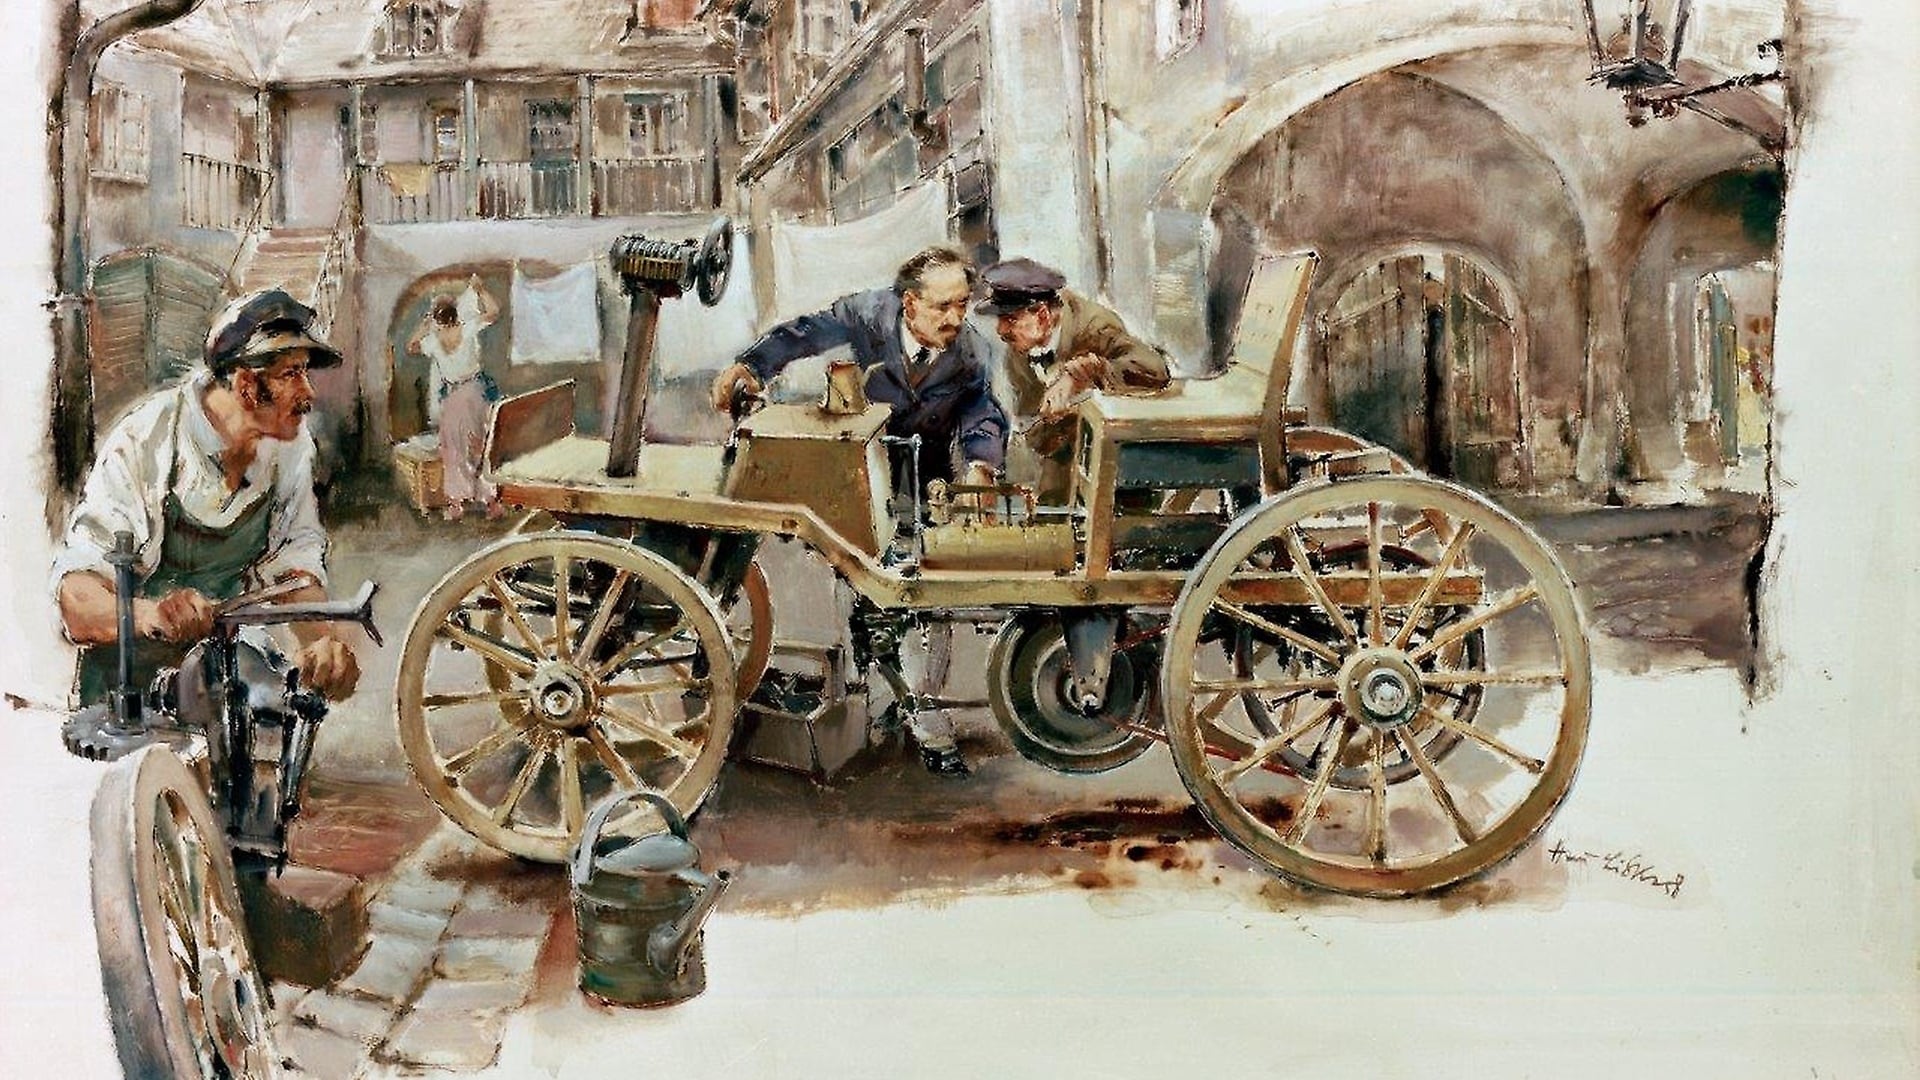 Zweiter Motorwagen von Siegfried Marcus, 1888/89. Die irrtümliche Datierung auf 1875 wurde erst 1968 eindeutig widerlegt. Zeichnung von Hans Liska, 1958.